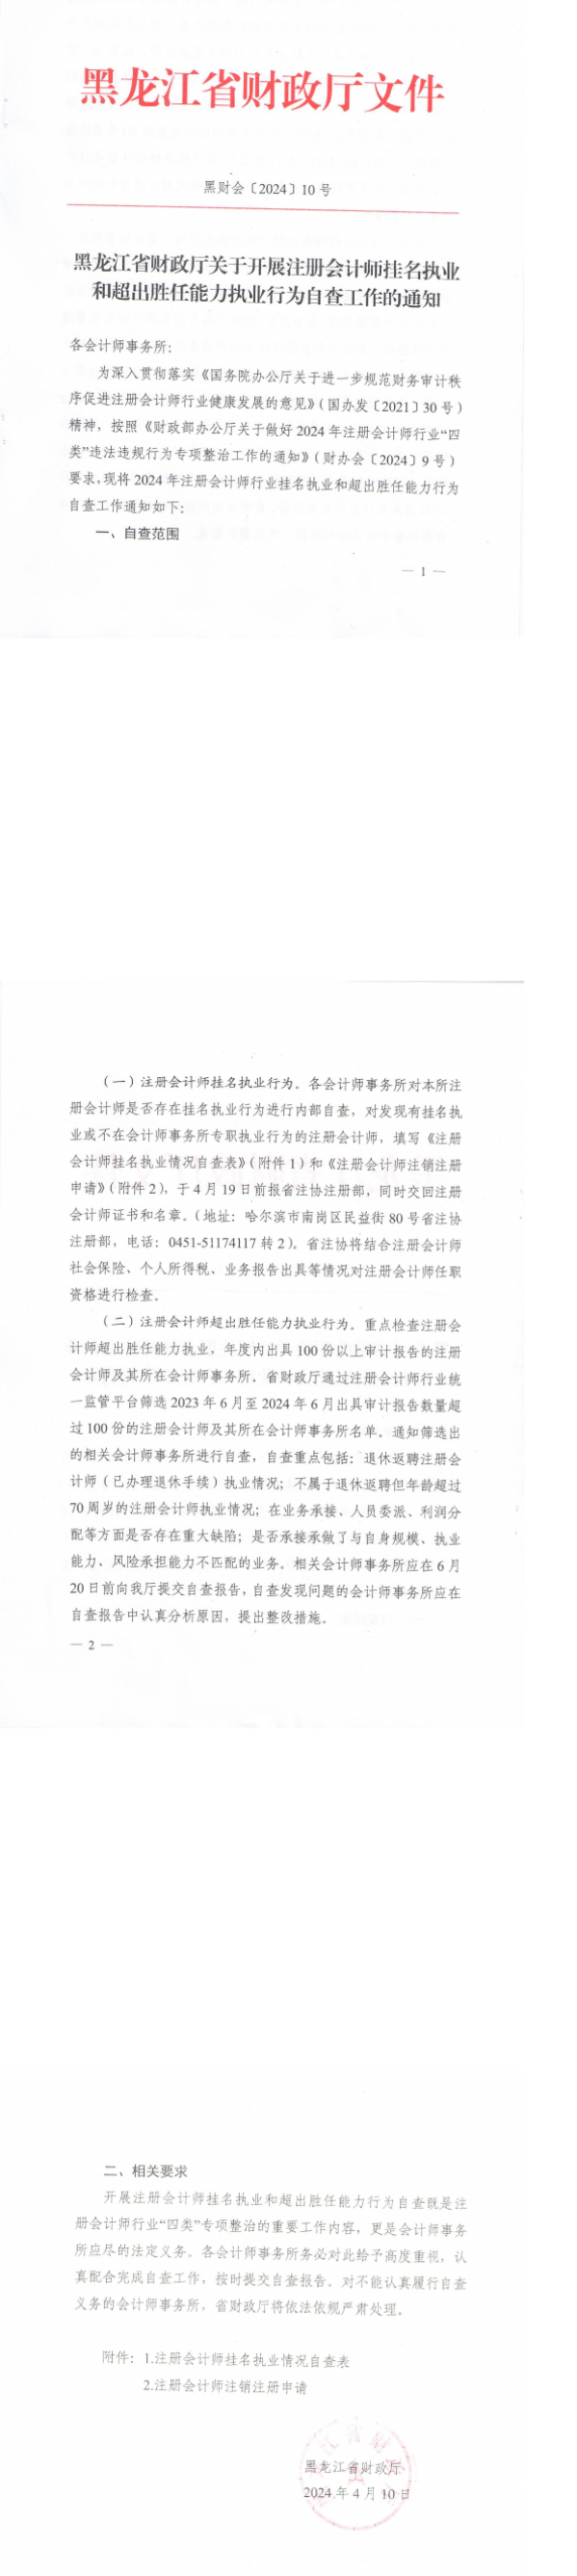 黑龙江省财政厅关于开展注册会计师挂名执业和超出胜任能力执业行为自查工作的通知.png